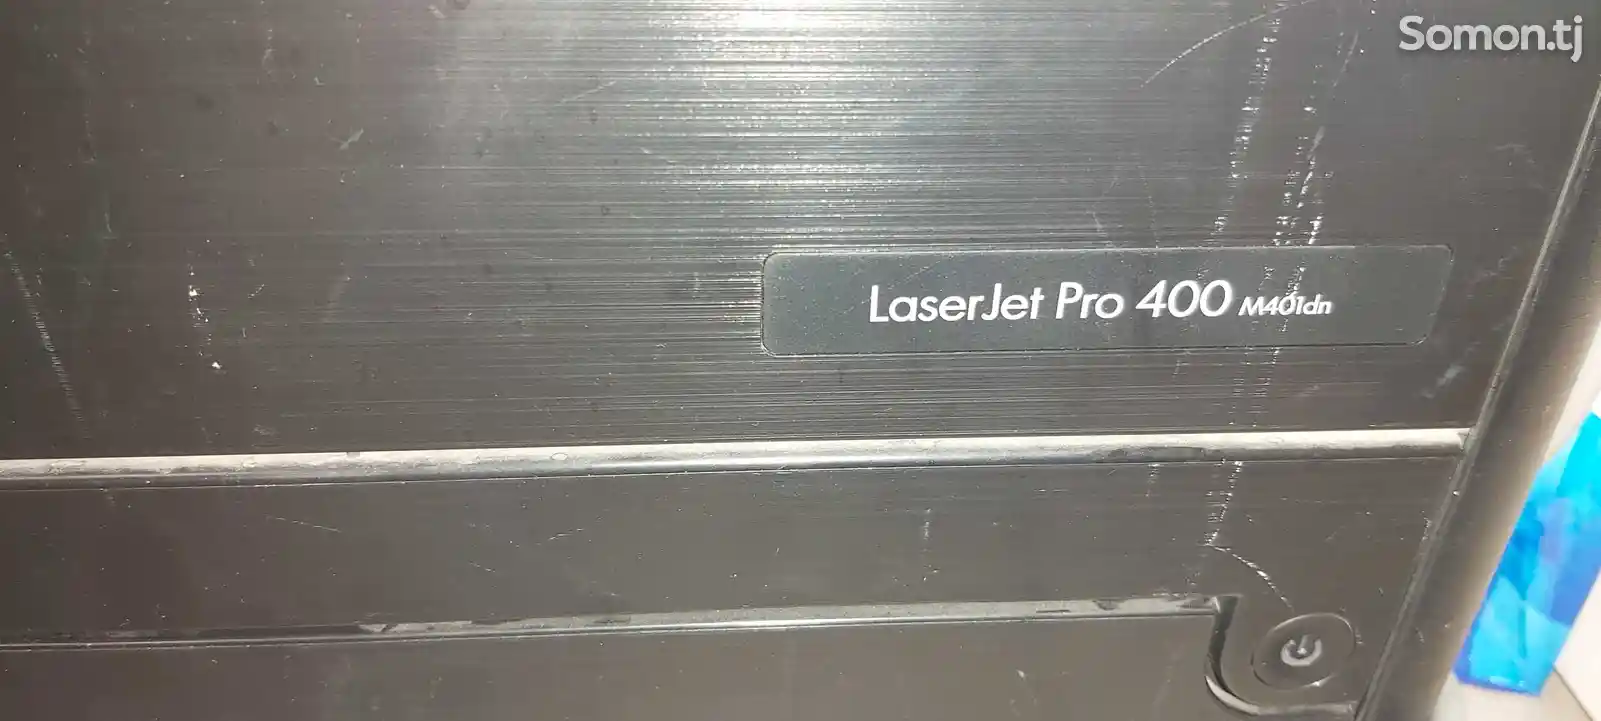 Сетевой двусторонний принтер hp LaserJet Pro p400dn-2